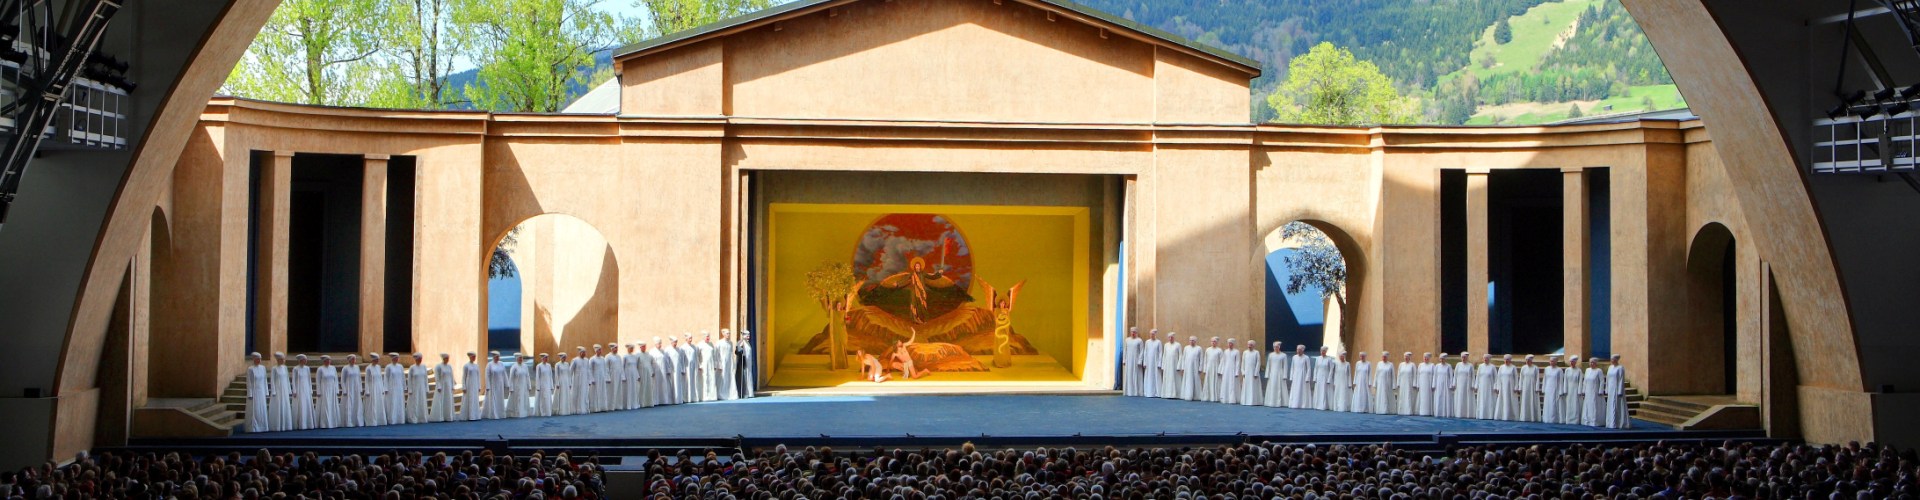 Auf der Bühne des Passionstheaters in Oberammergau werden die Passionssppiele vor ausverkauften Puplikum aufgeführt.